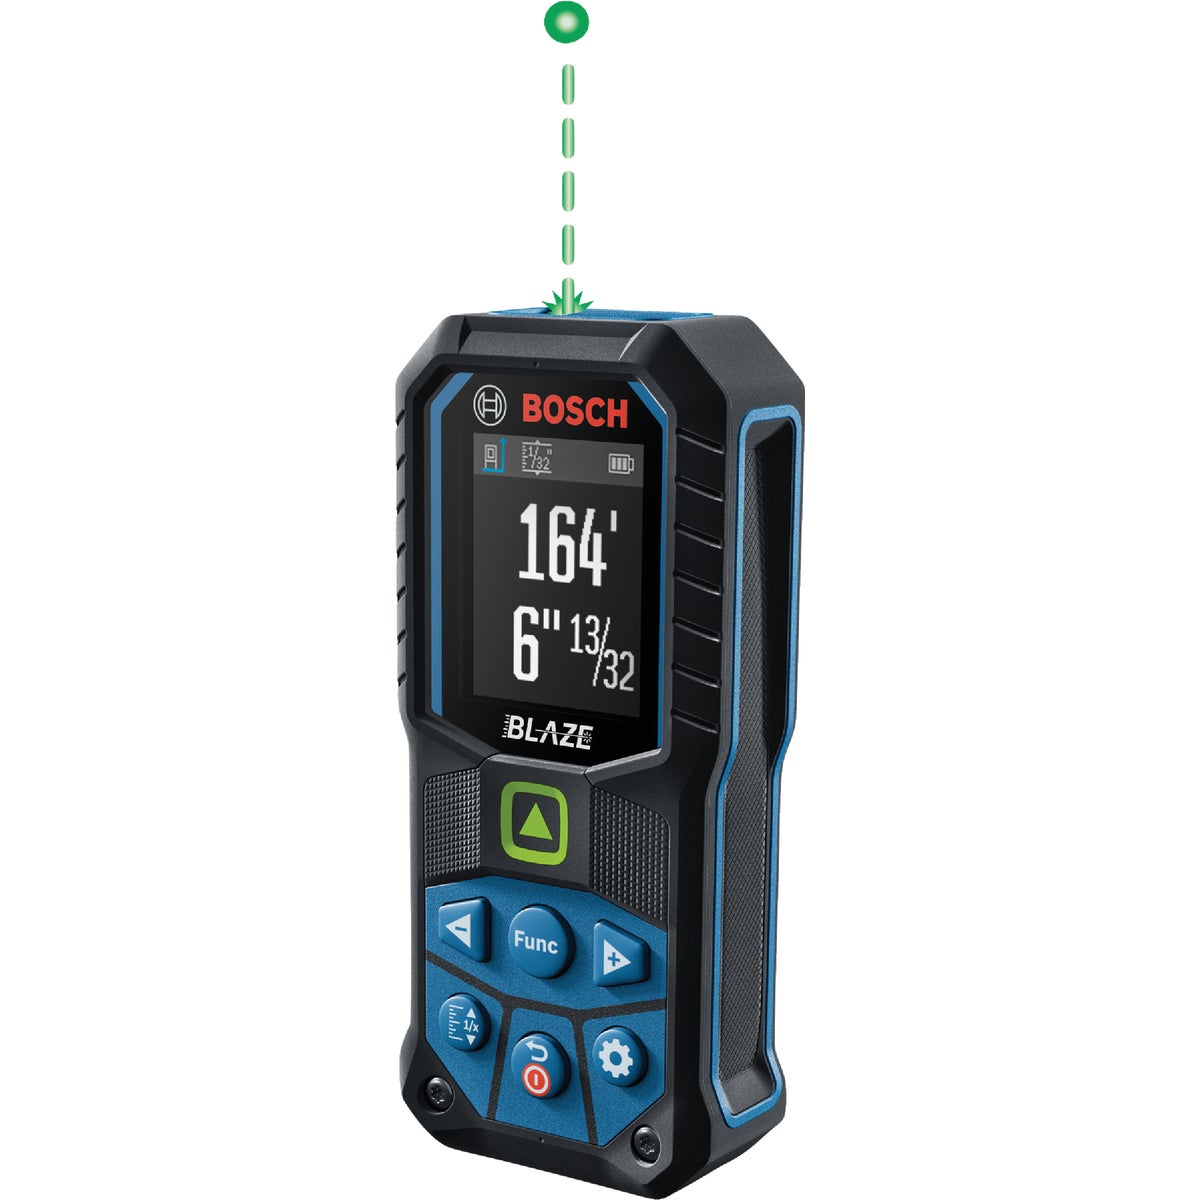 Bosch Blaze 165 Ft. Green-Beam Laser Distance Measurer